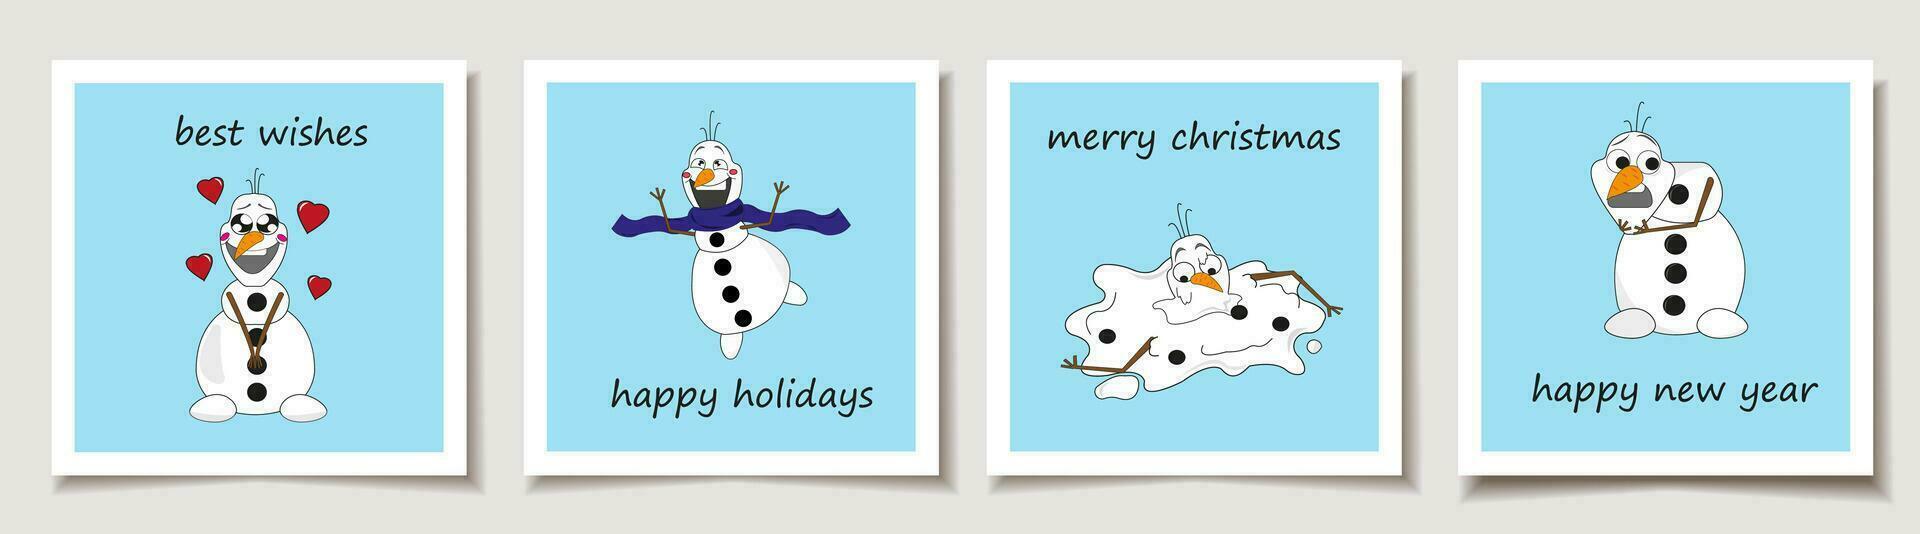 Natale vettore regalo carta o etichetta impostato carino cartone animato Natale pupazzi di neve personaggi. carino le signore. allegro Natale scritte, migliore auguri